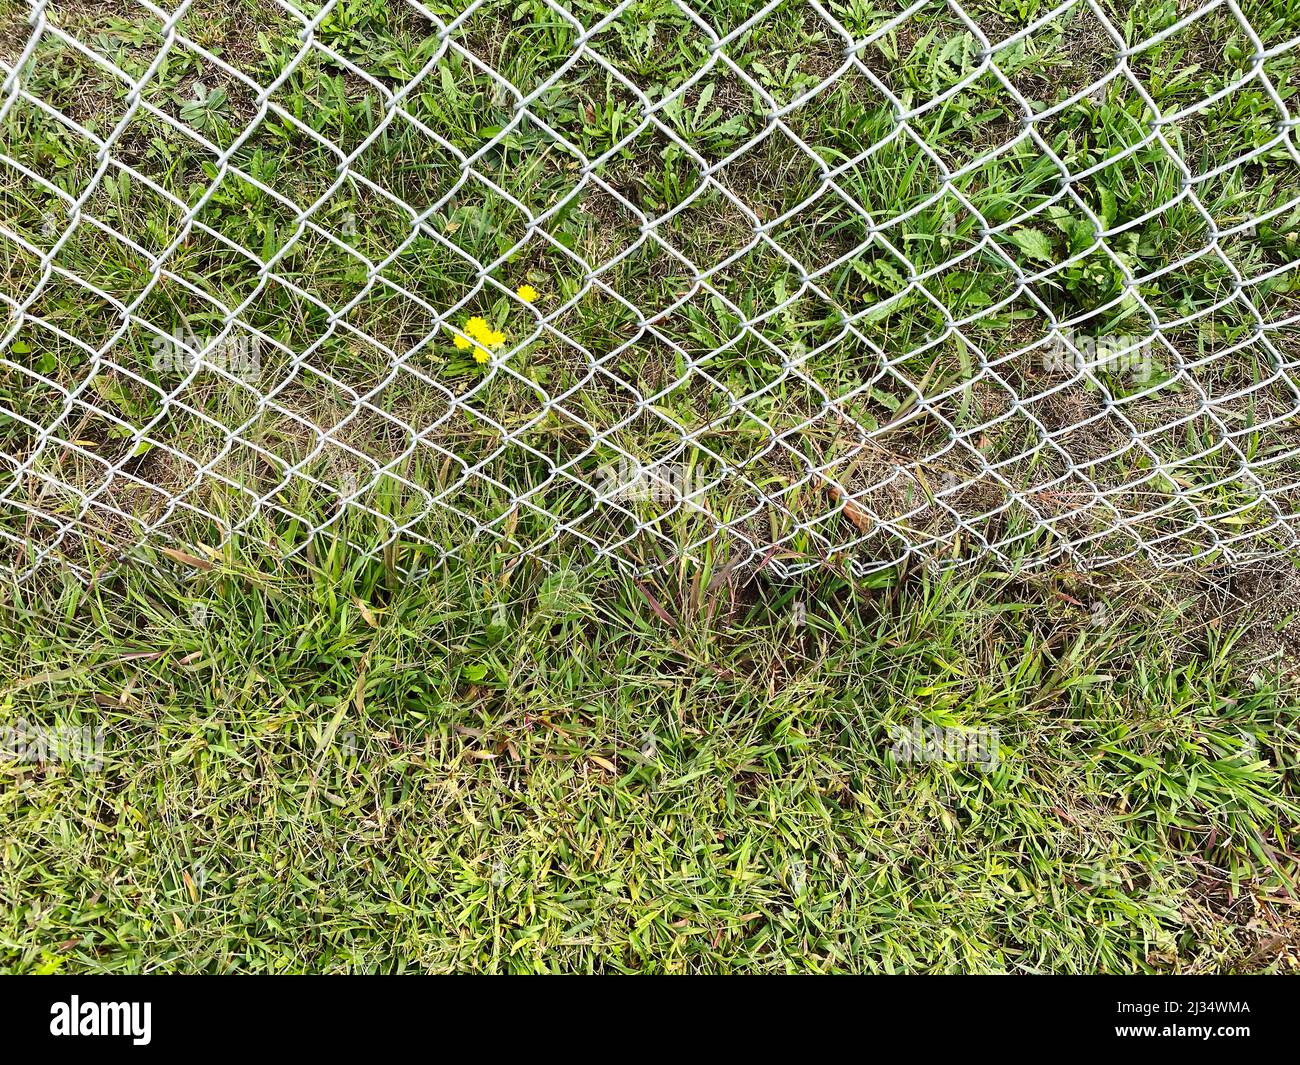 une arrière-cour clôture chaîne lien métal sécurité de jardin frontière fraîche couper herbe jardinage cour jardinage jardinage Banque D'Images